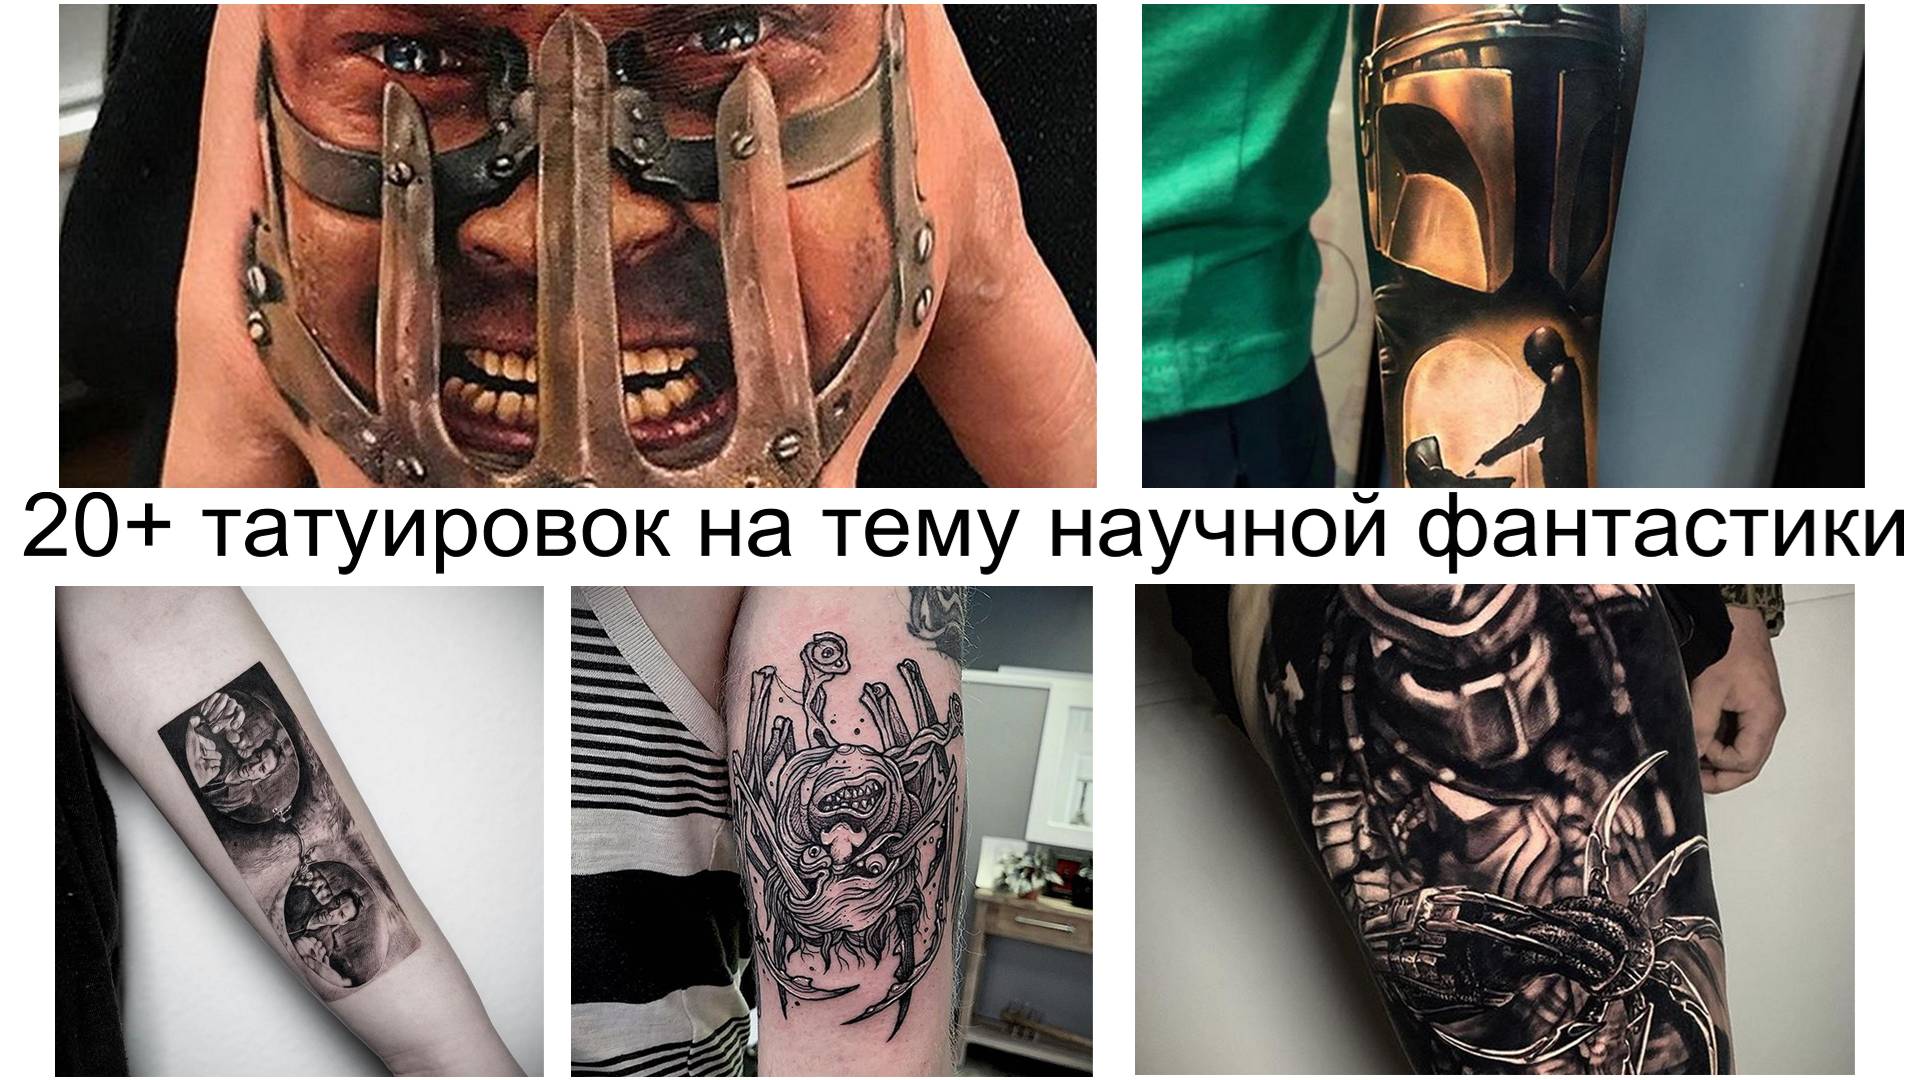 20+ татуировок на тему научной фантастики: подборка фото тату к международному дню научной фантастики – 2 января 2020 года